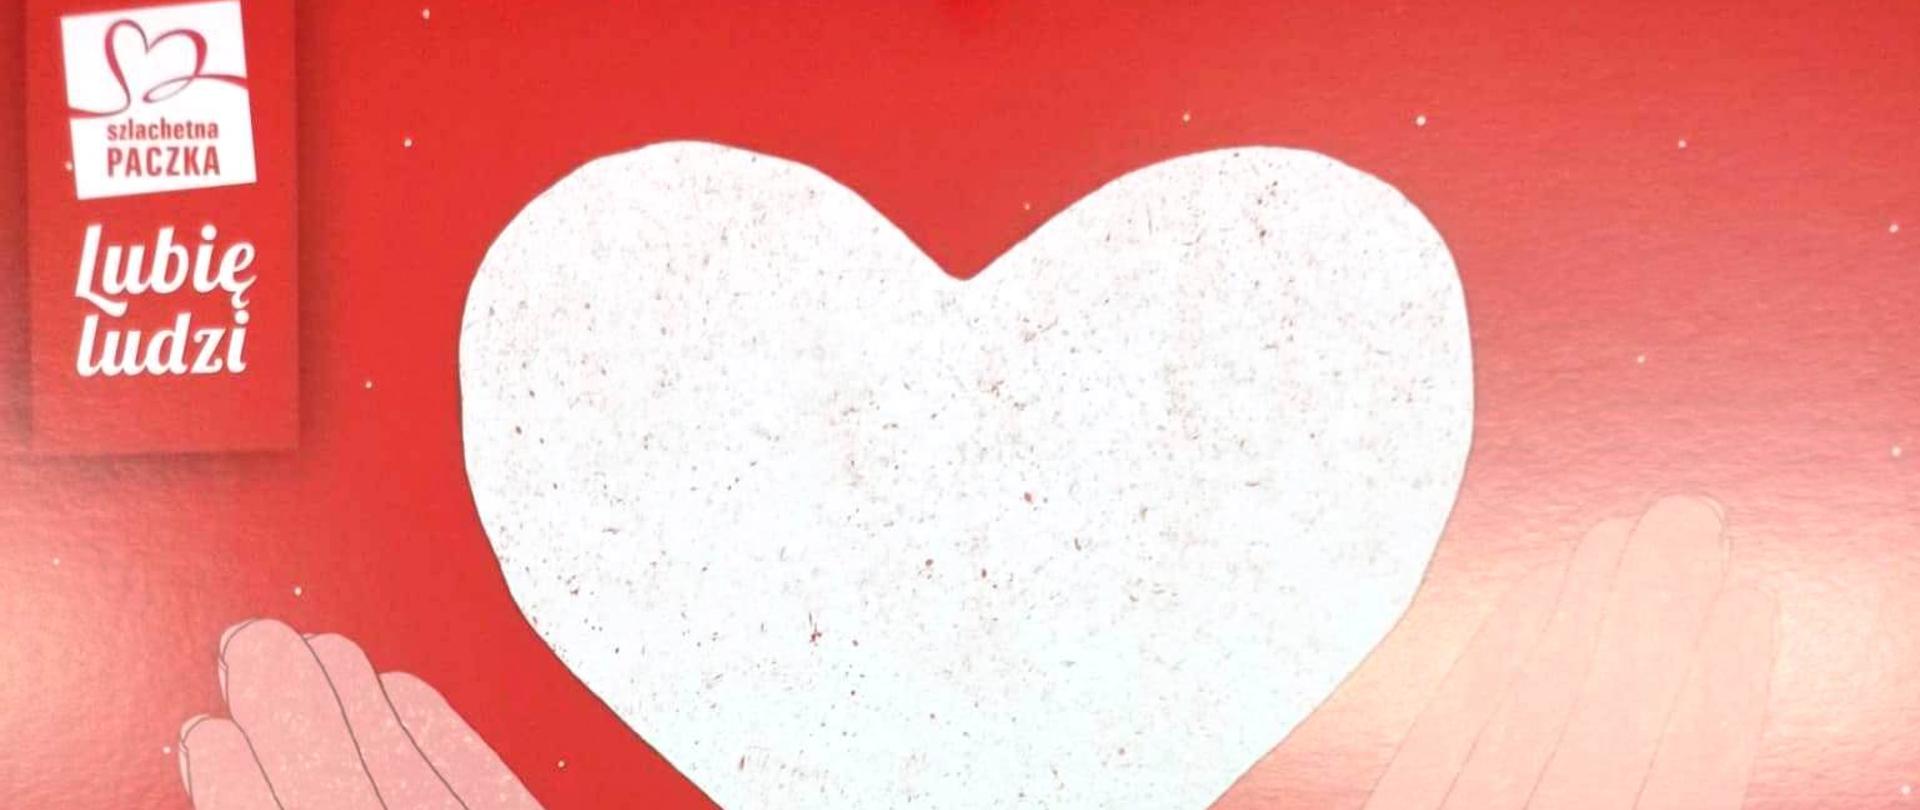 Zdjęcie przedstawia kolorowe biało czerwone logo akcji szlachetnej paczki. Na czerwonym tle symboliczne dwie różowe dłonie, pośrodku biały kształt serca. Pod spodem biały napis dziękujemy. W lewym górnym rogu symbol i napis szlachetna paczka lubię ludzi. U dołu widoczny napis o treści podziękowanie za udział w dwudziestej pierwszej edycji szlachetnej paczki.